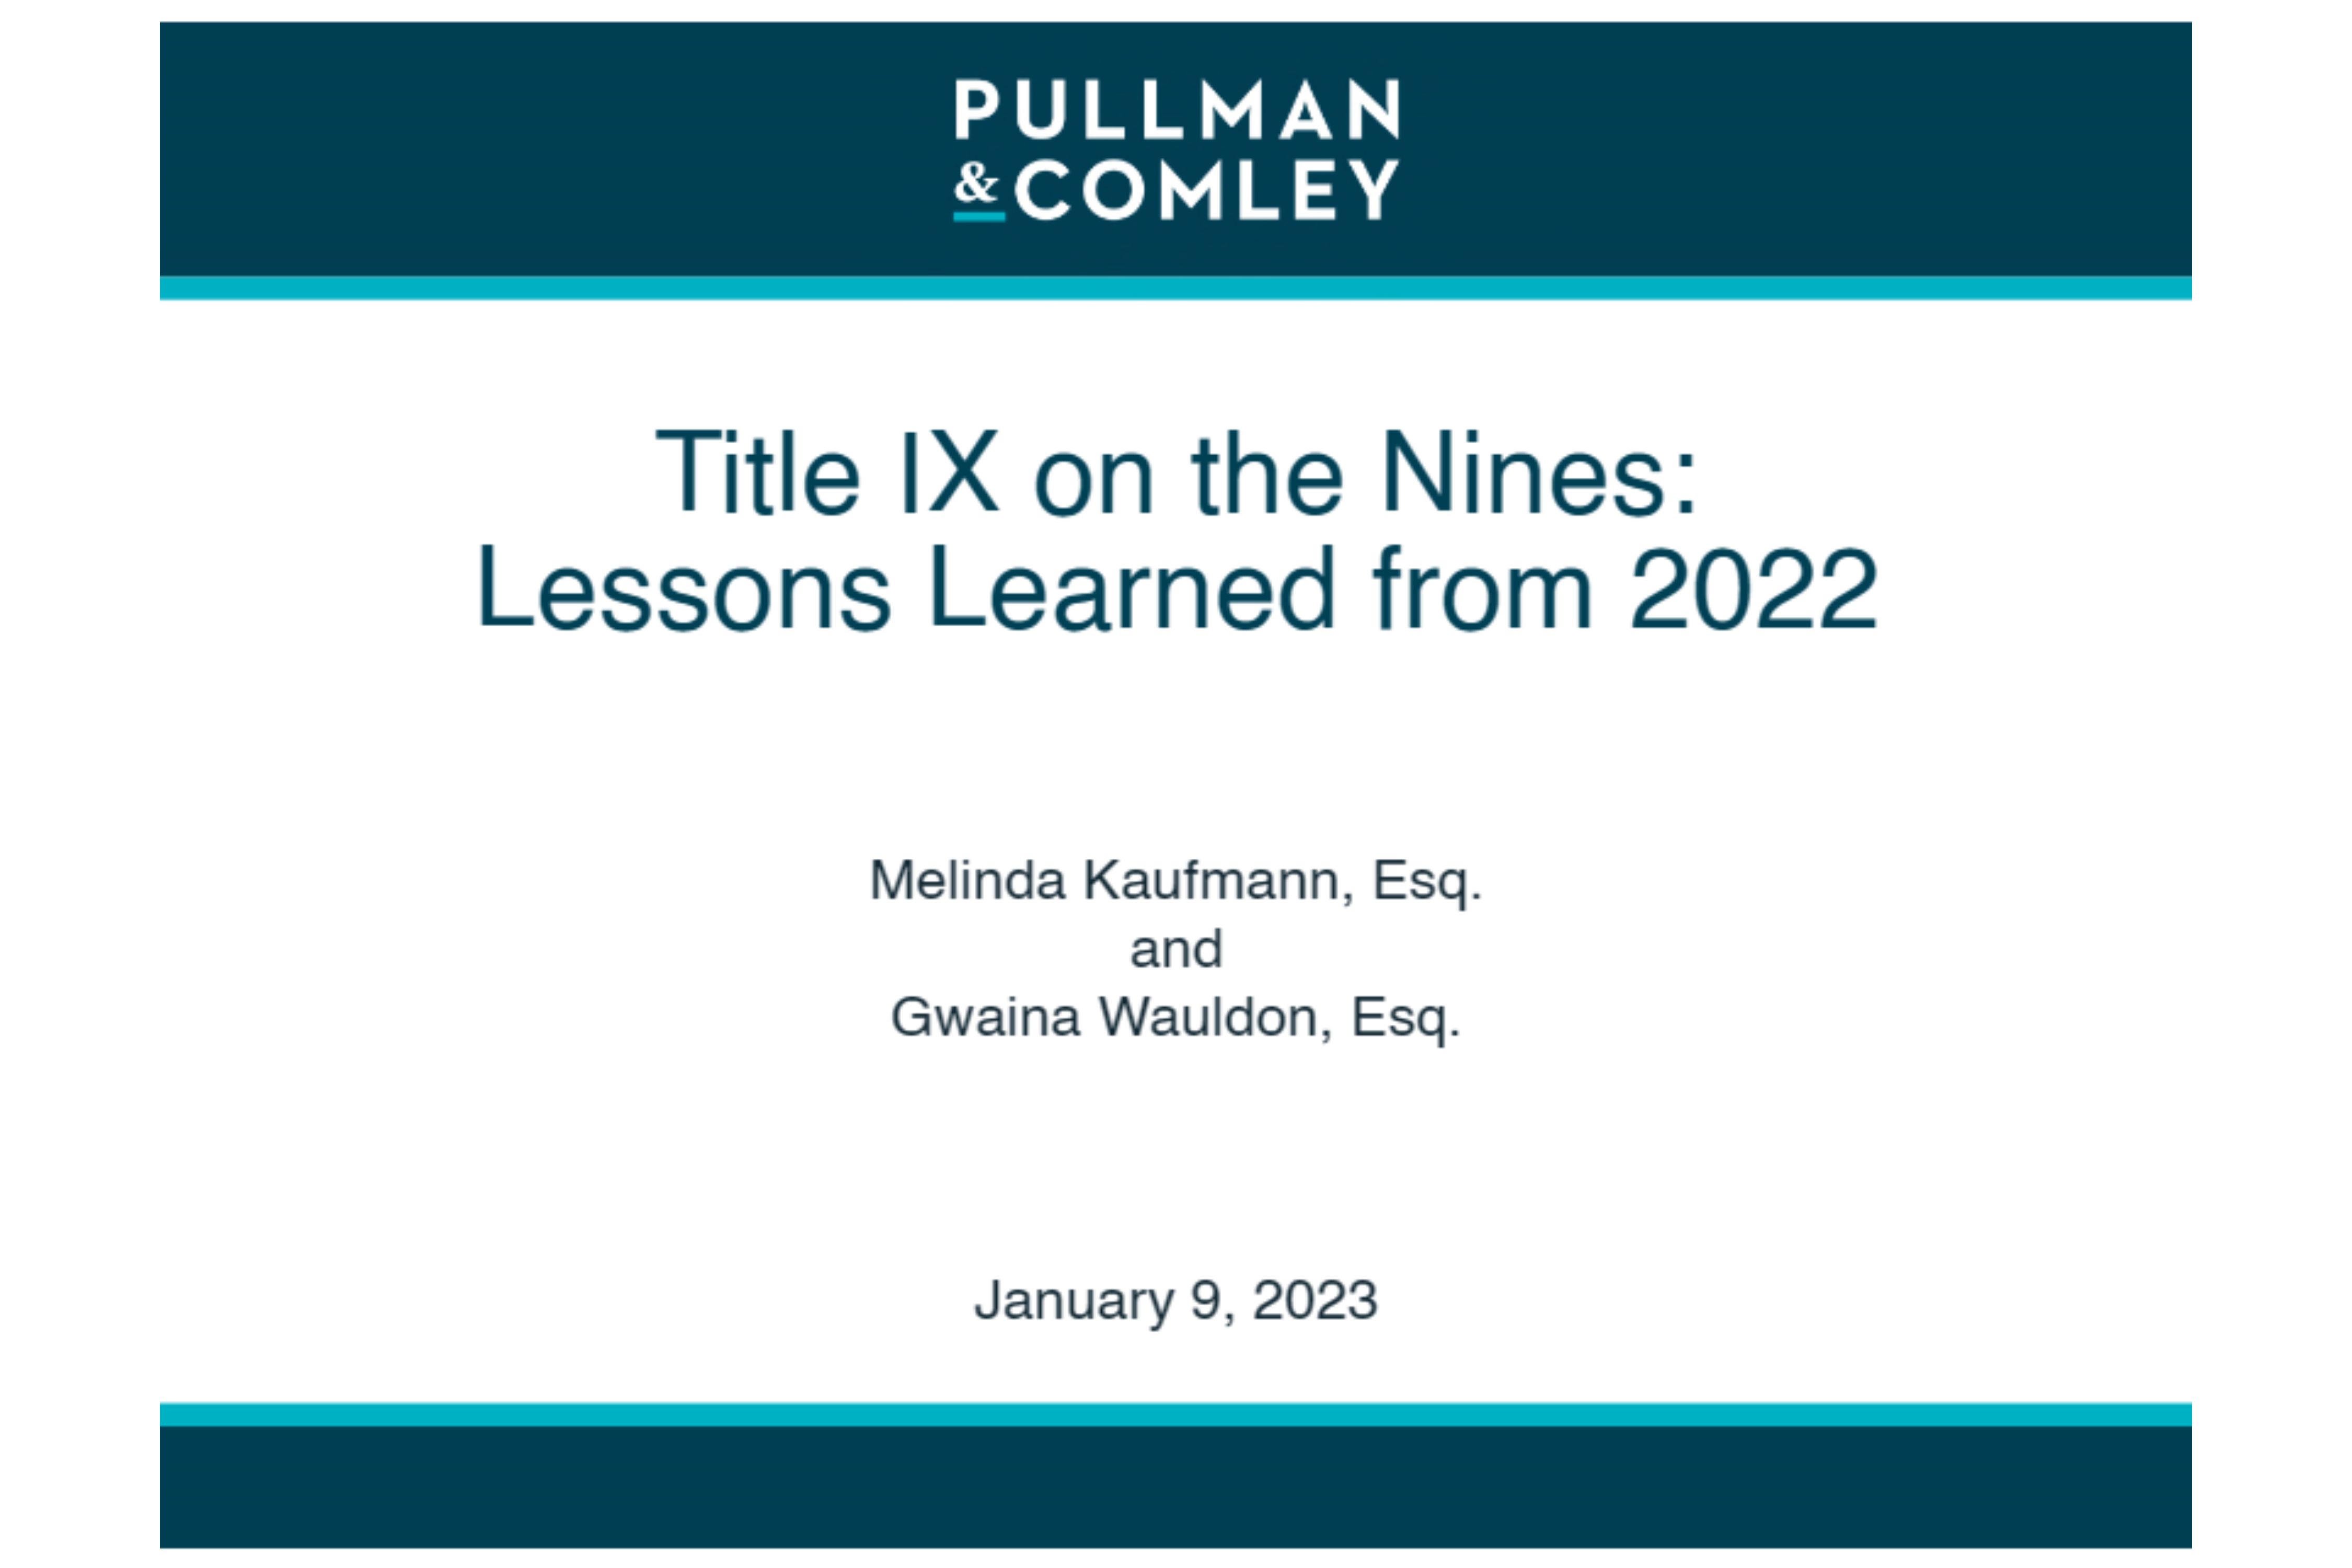 Title IX on the Nines Slide 1